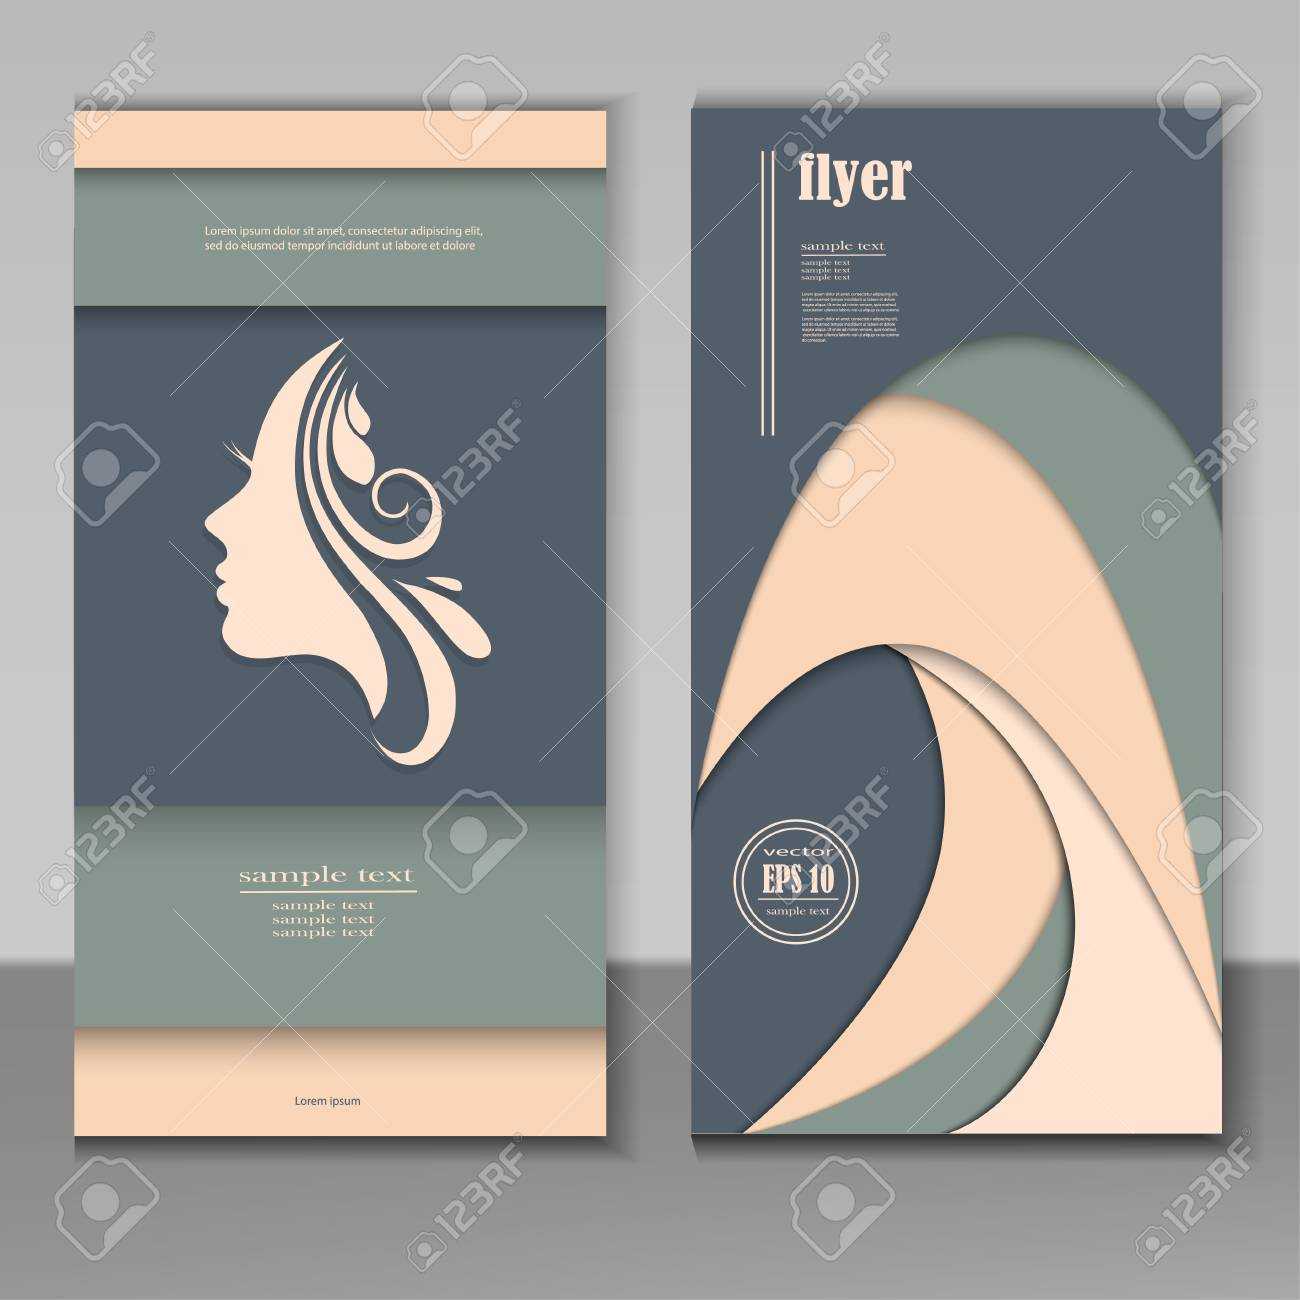 Hair And Beauty Salon Business Card Design Template. Within Hair Salon Business Card Template